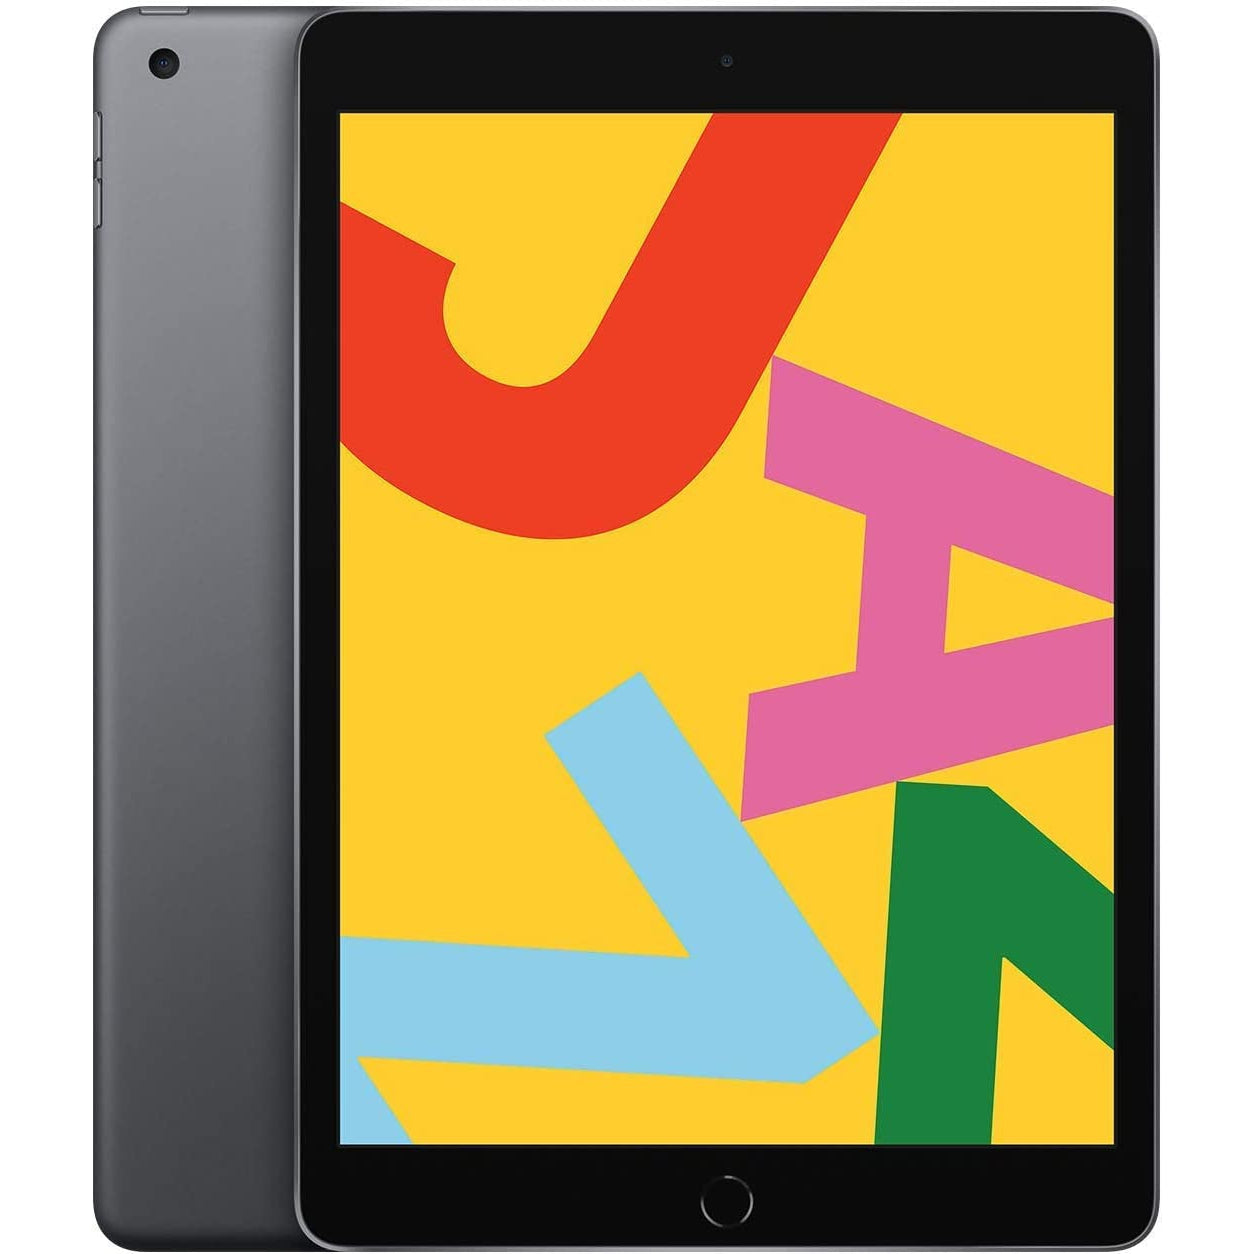 Apple iPad 7th Gen, 10.2" Wi-Fi + Cellular 32GB Tablet - MW6A2B/A - Space Grey - Refurbished Good